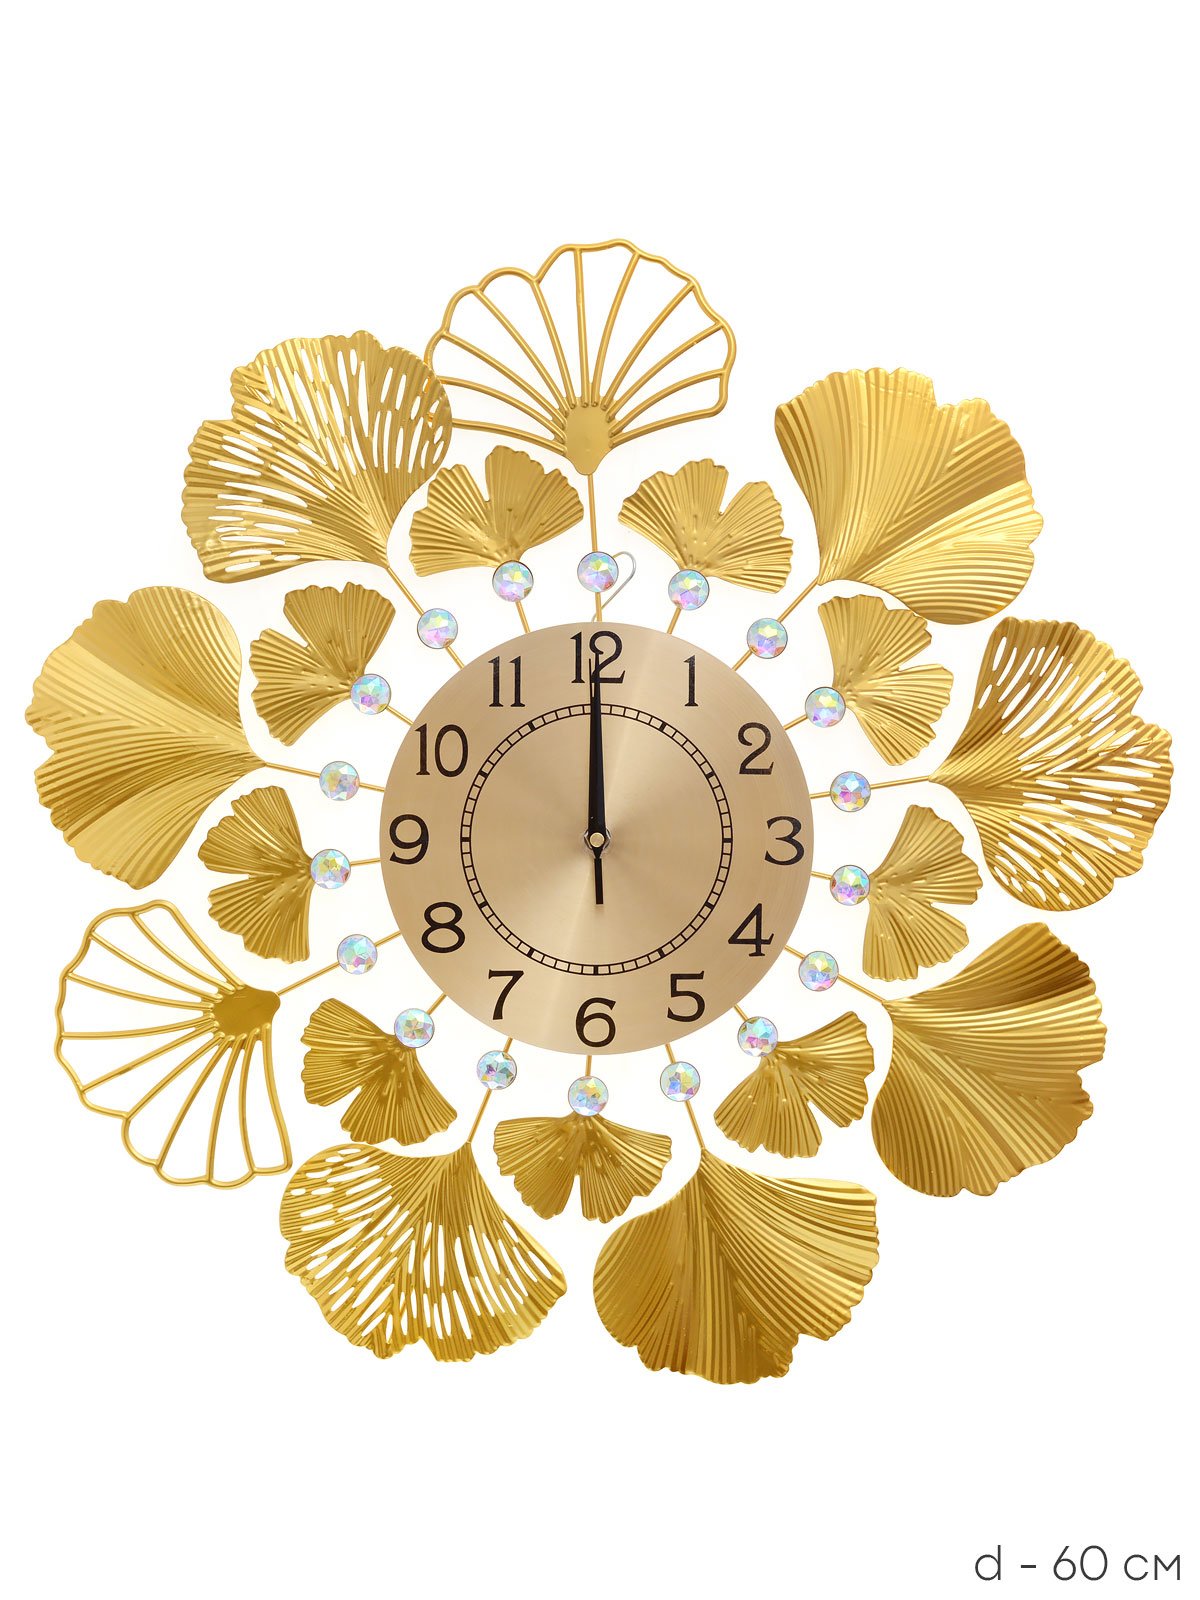 Часы настенные 60 см. Часы настенные 60 см / yj6464xl3. Часы настенные с маятником золотой узор 4020-001. Купить белые с золотой отделкой настенные часы. Часы настенные 60*3*60 см.